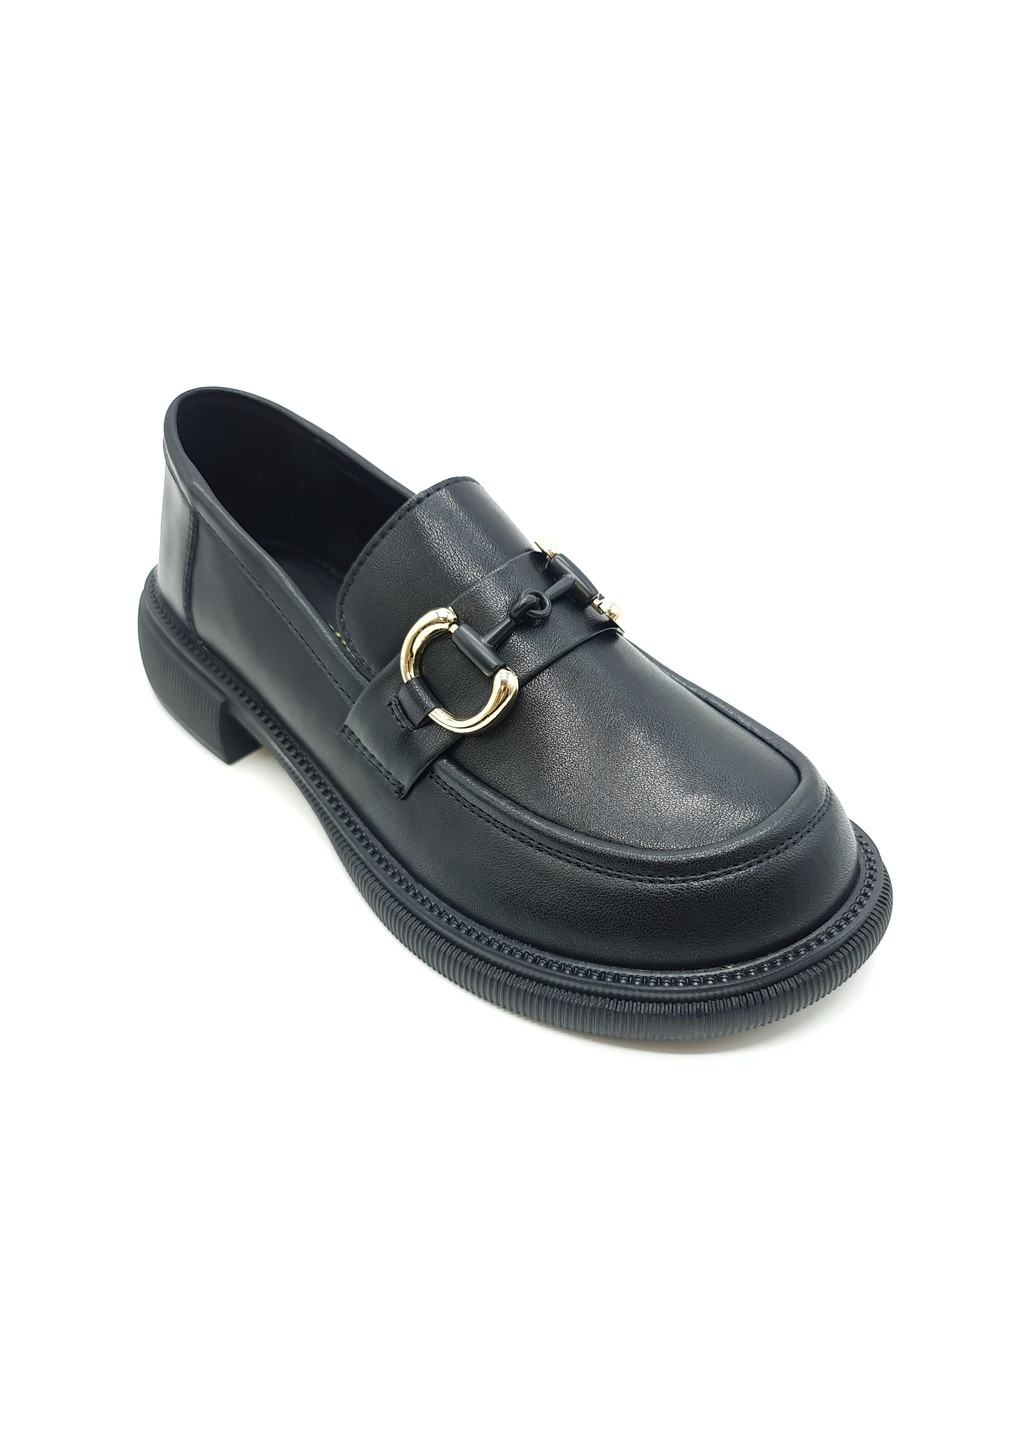 Женские туфли черные кожаные YA-18-11 23 см(р) Yalasou